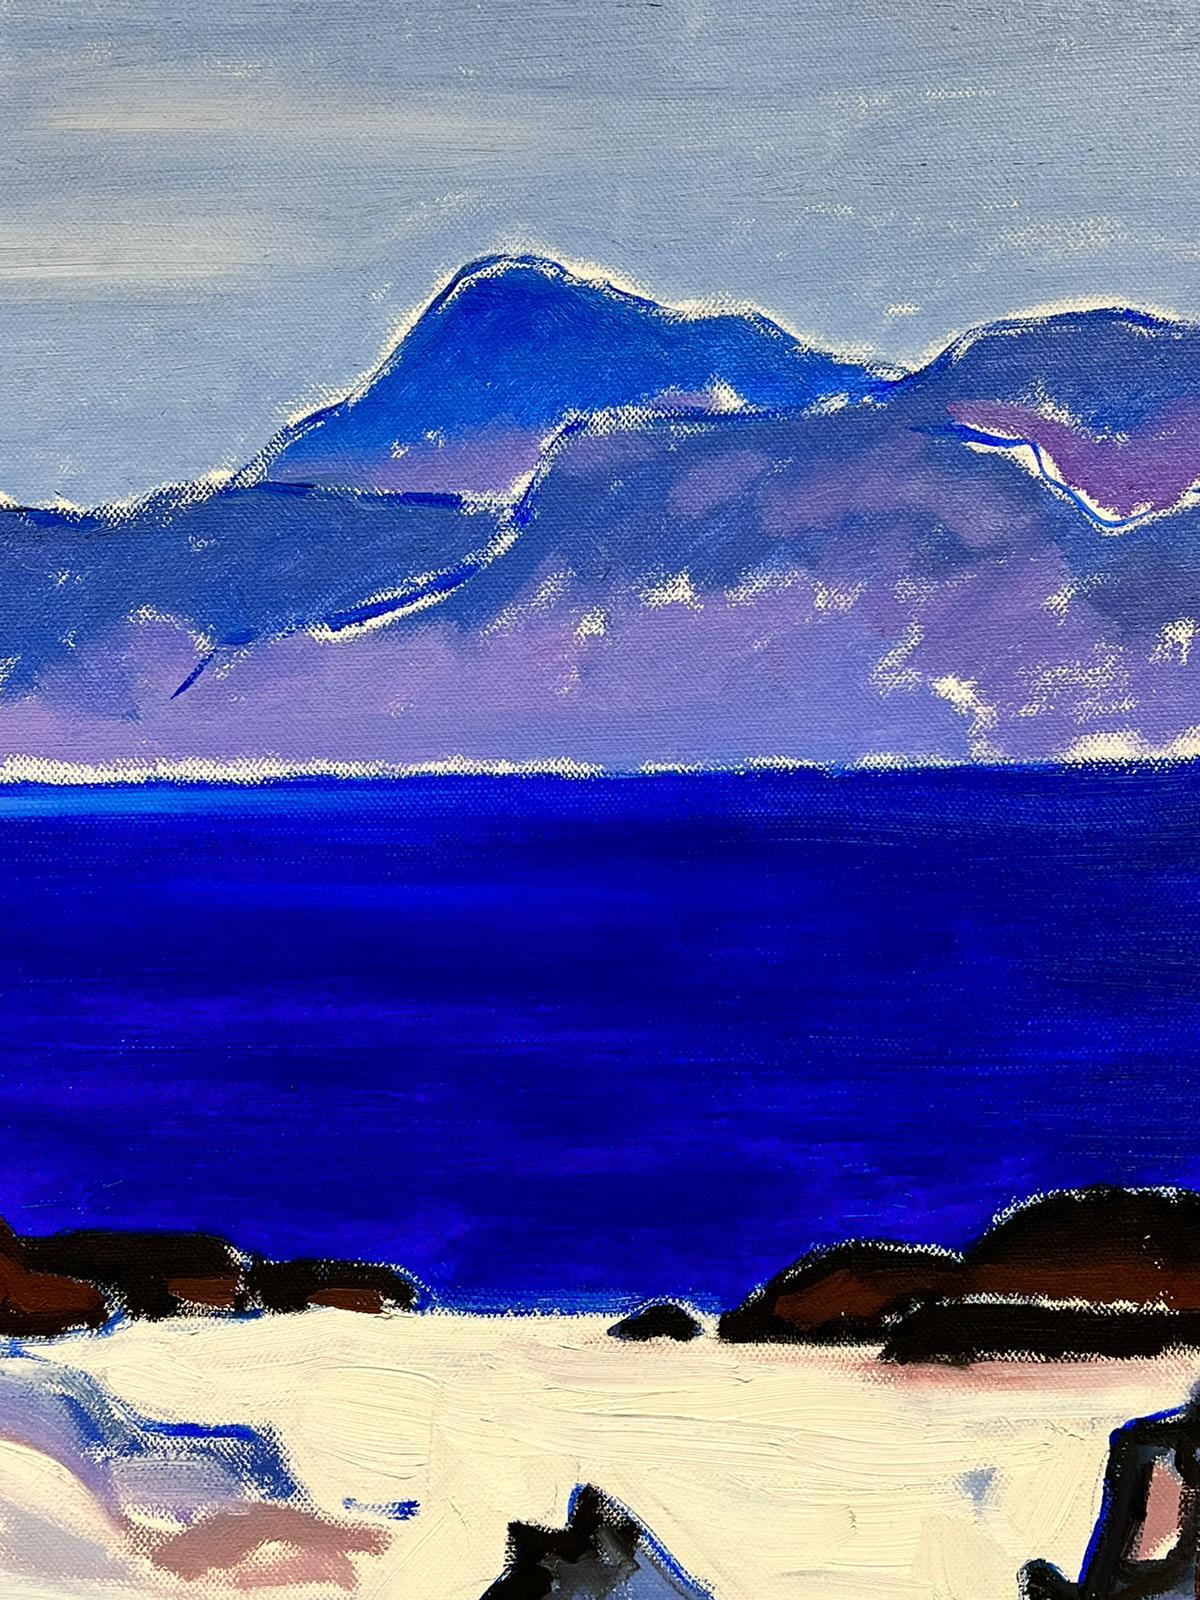 Peinture à l'huile moderniste écossaise sur toile Iona Blue Seas Purple Highlands - Moderne Painting par Scottish School